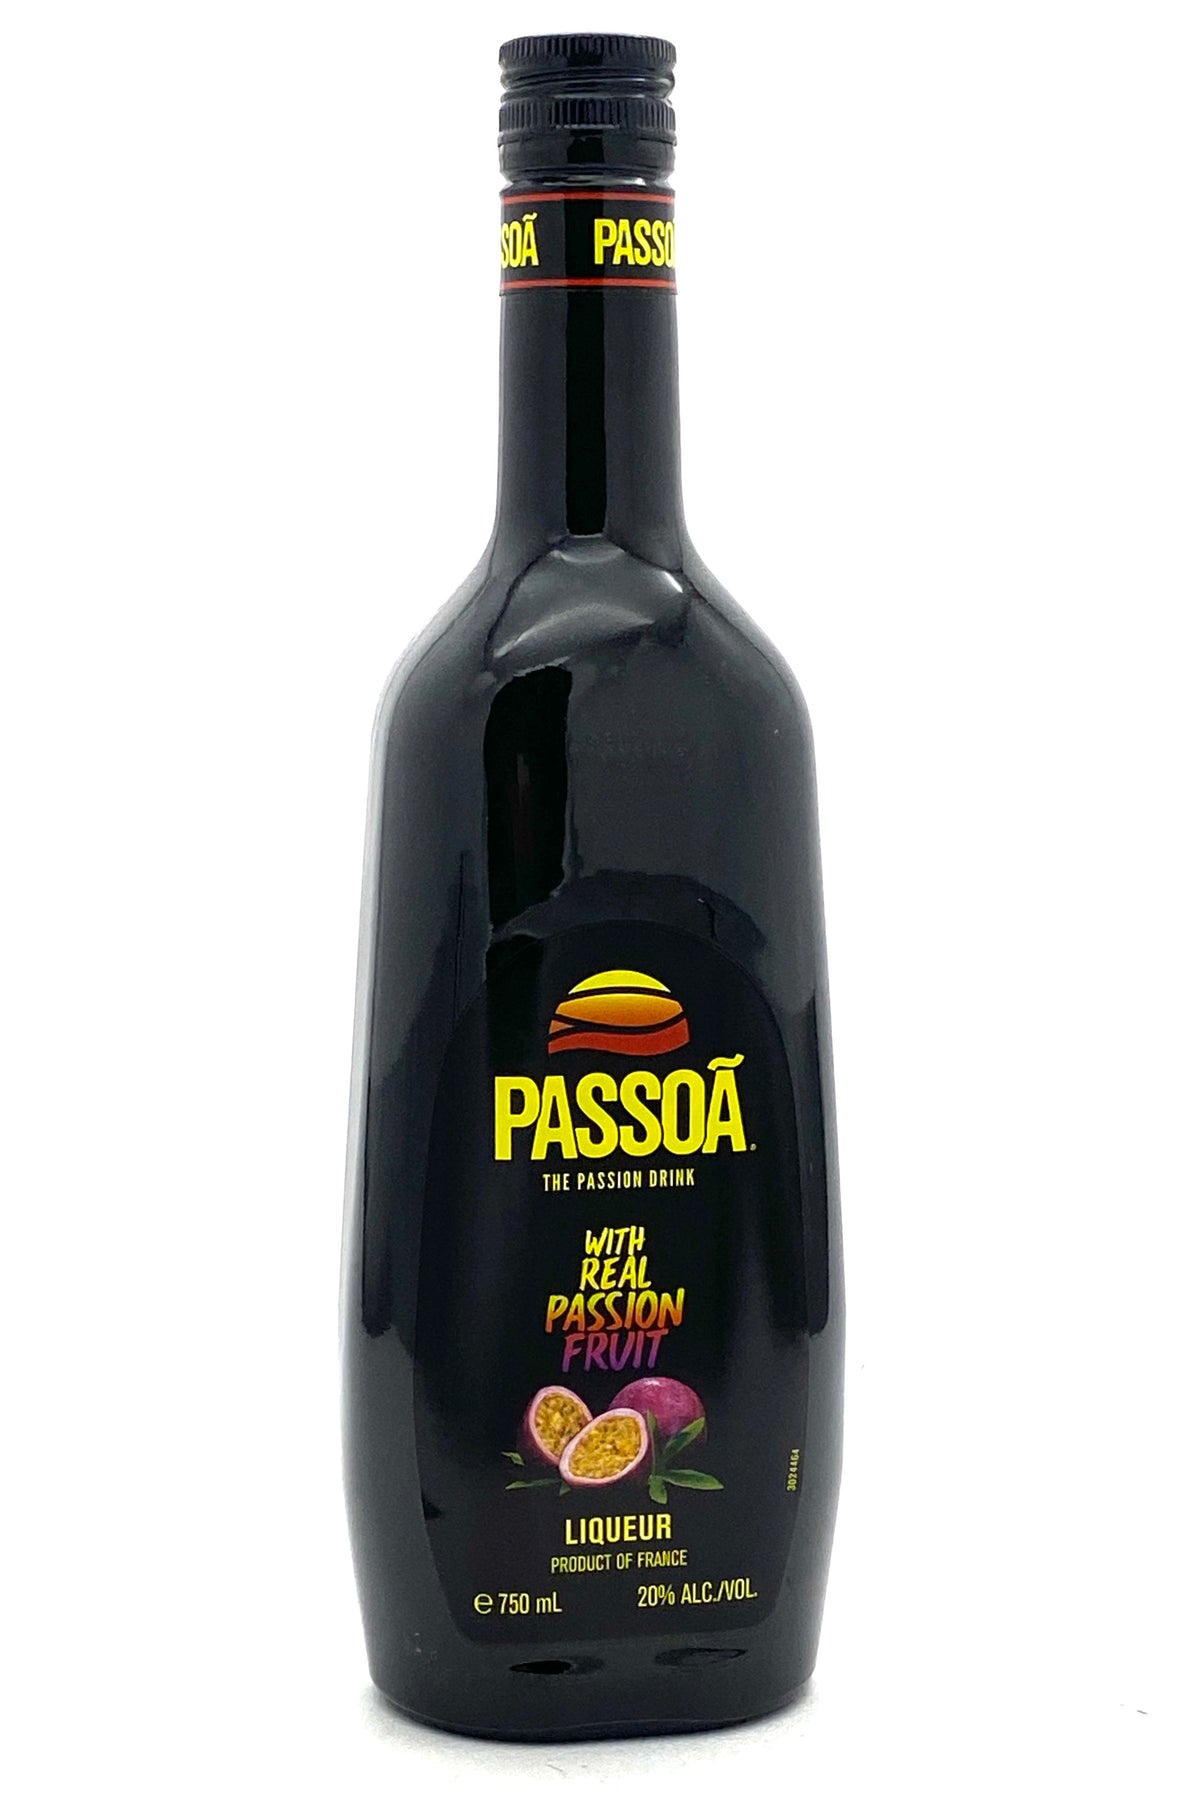 Passoa Passionfruit Liqueur 750ml